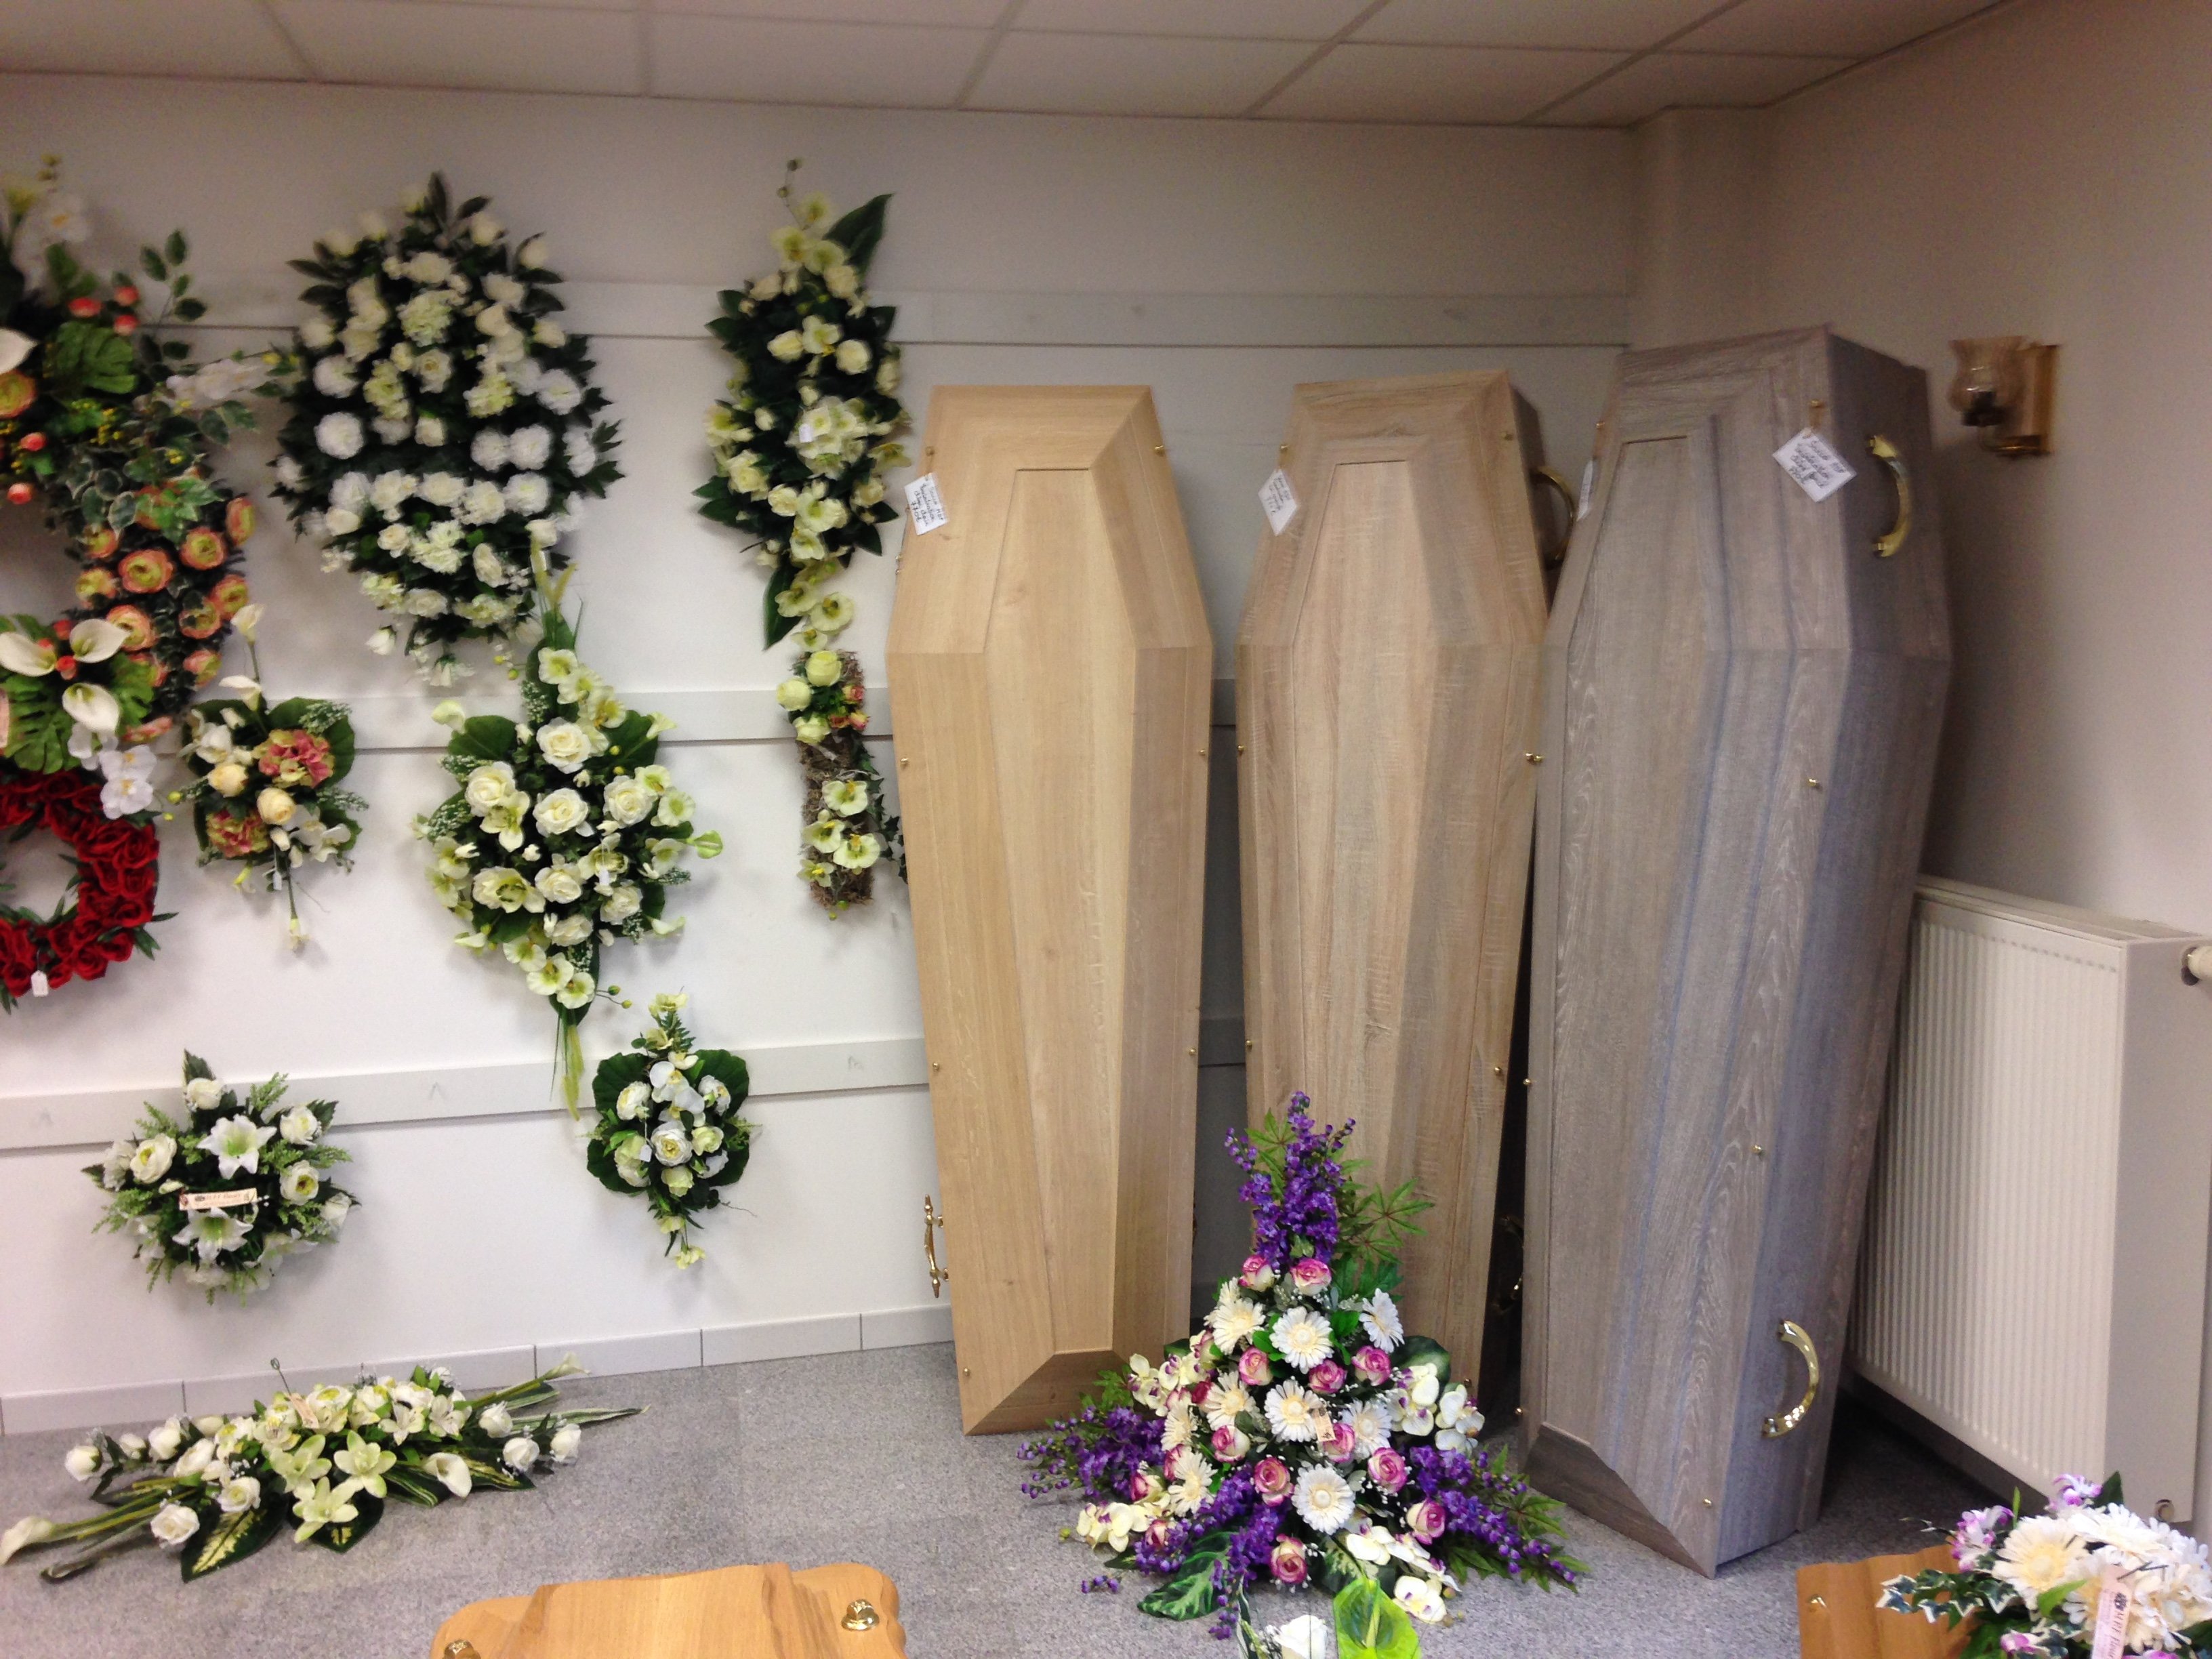 Les pompes funèbres Adam-Hospital proposent des fleurs et plaques funéraires pour orner les cercueils